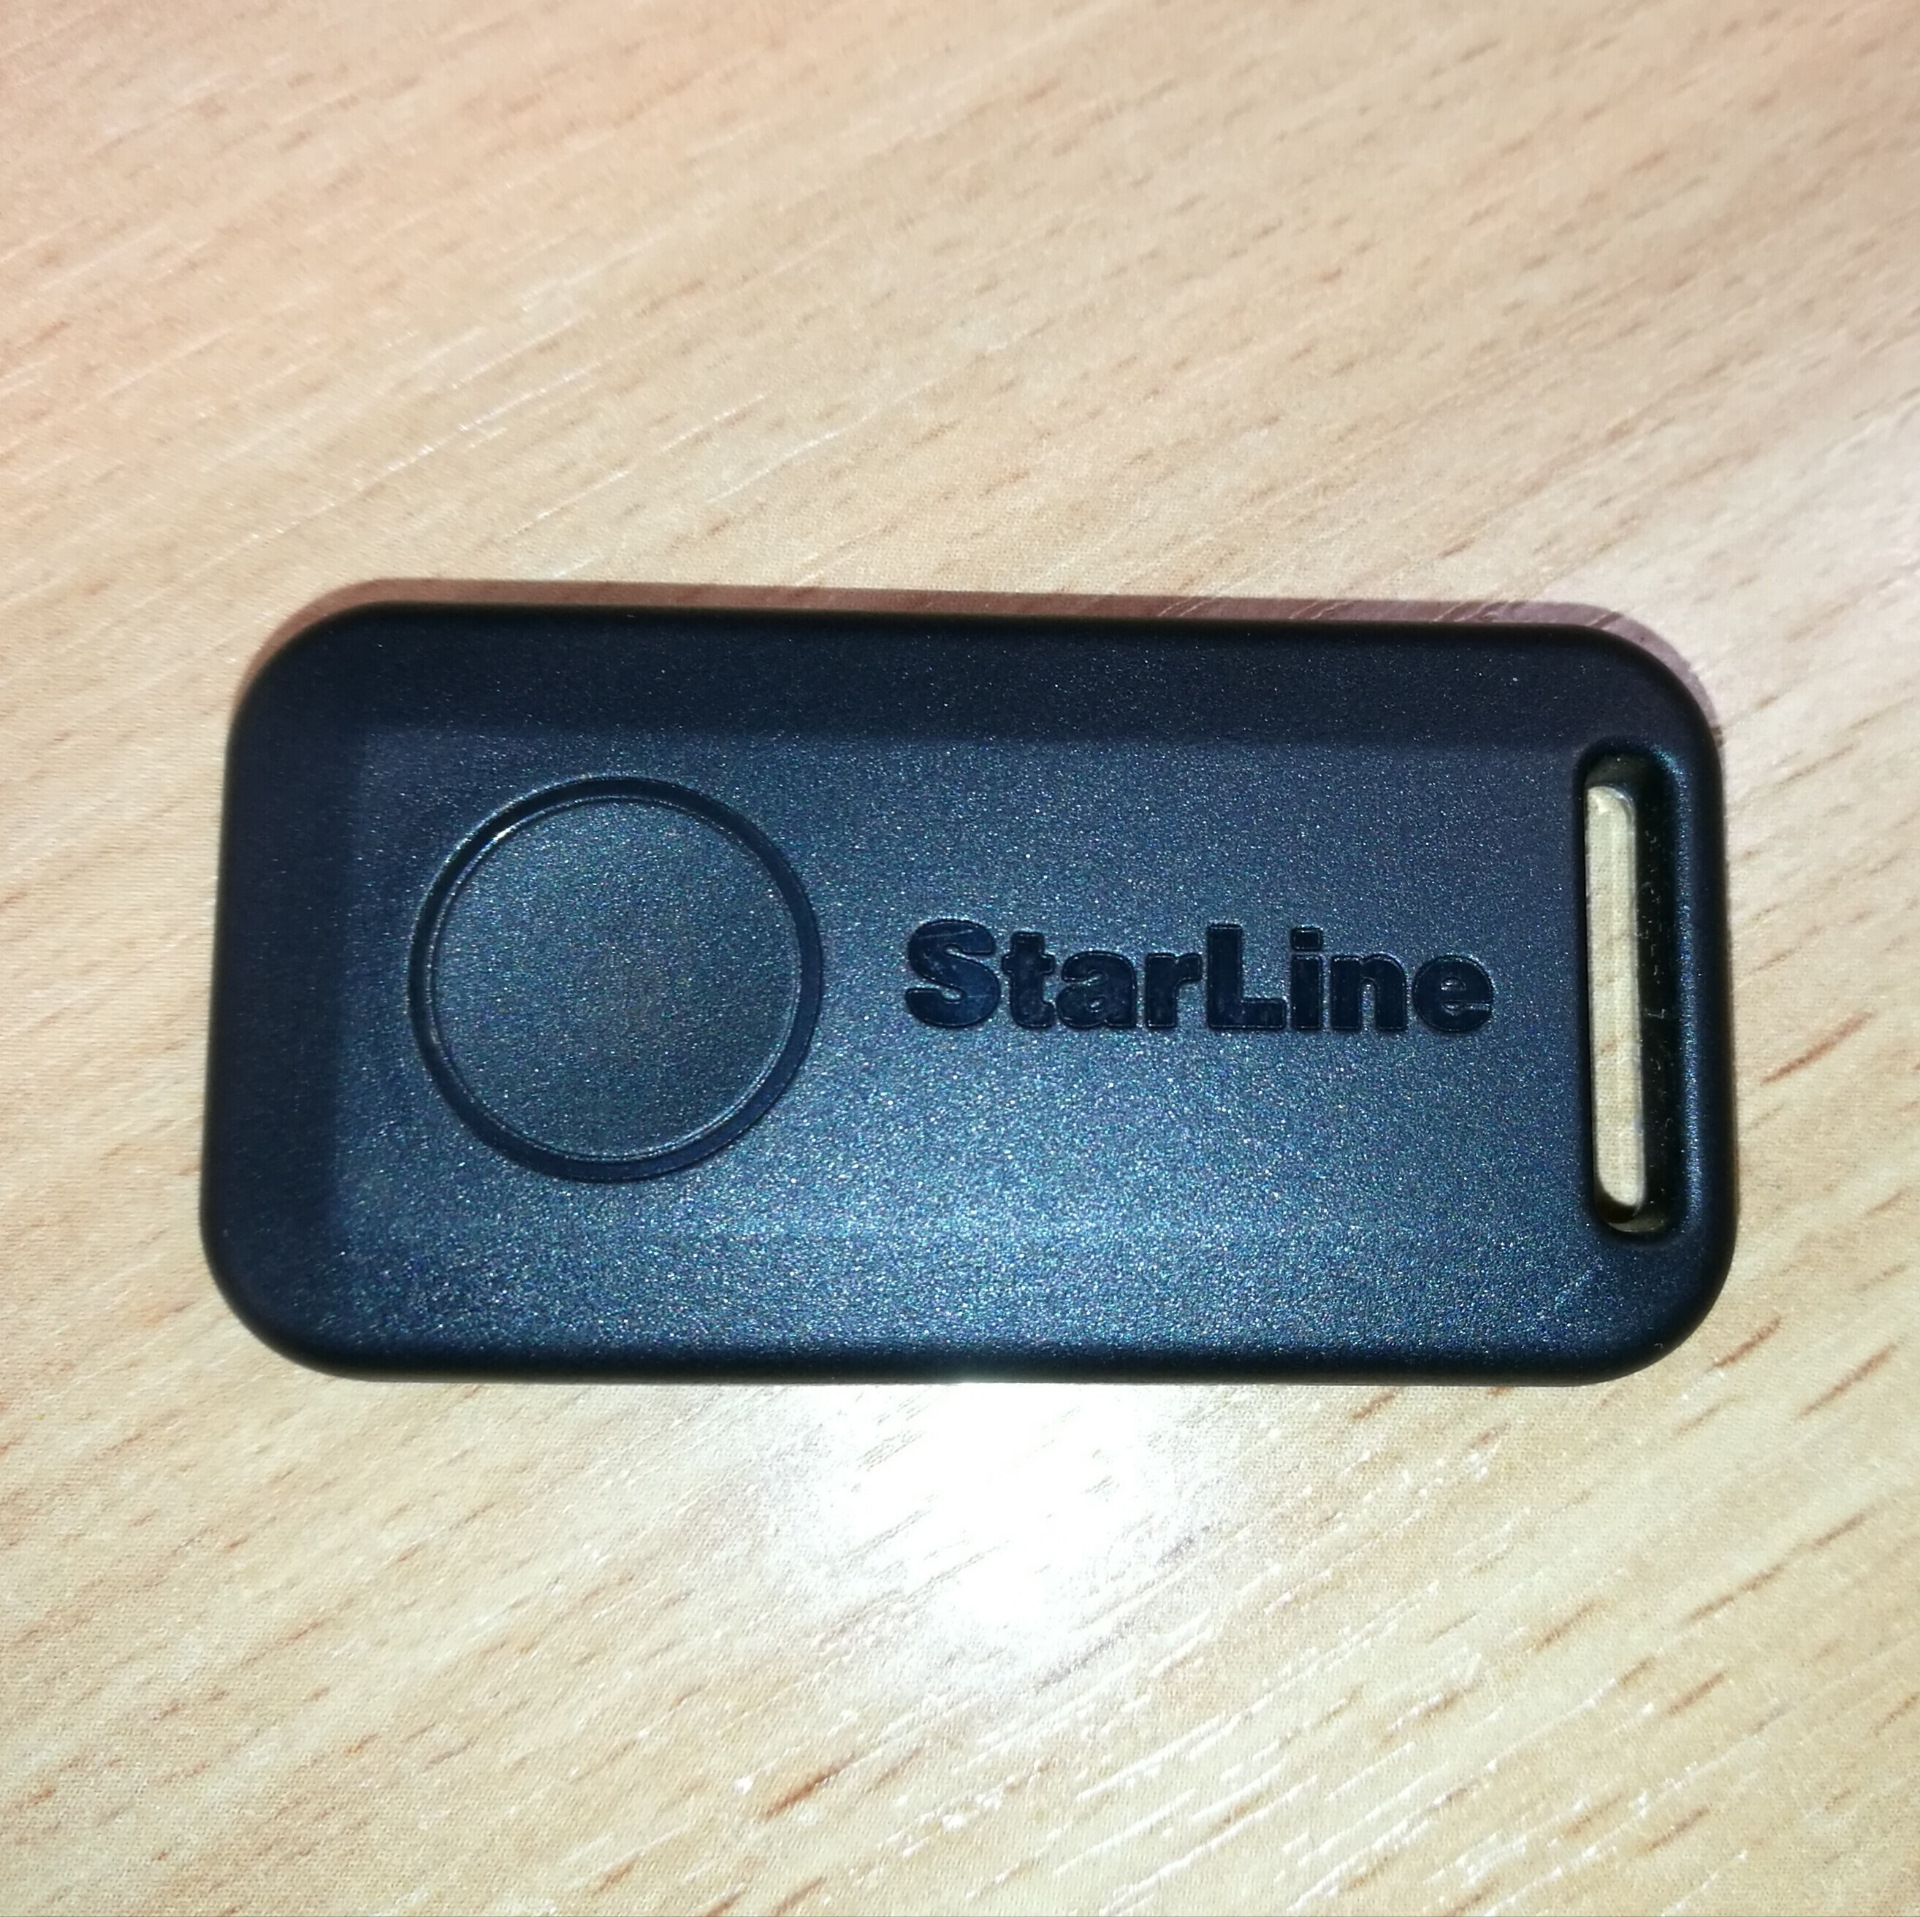 Метка старлайн 96. Метка STARLINE s96. Старлайн s96. Сигнализация STARLINE s96 v2. STARLINE a96 v2 брелок.